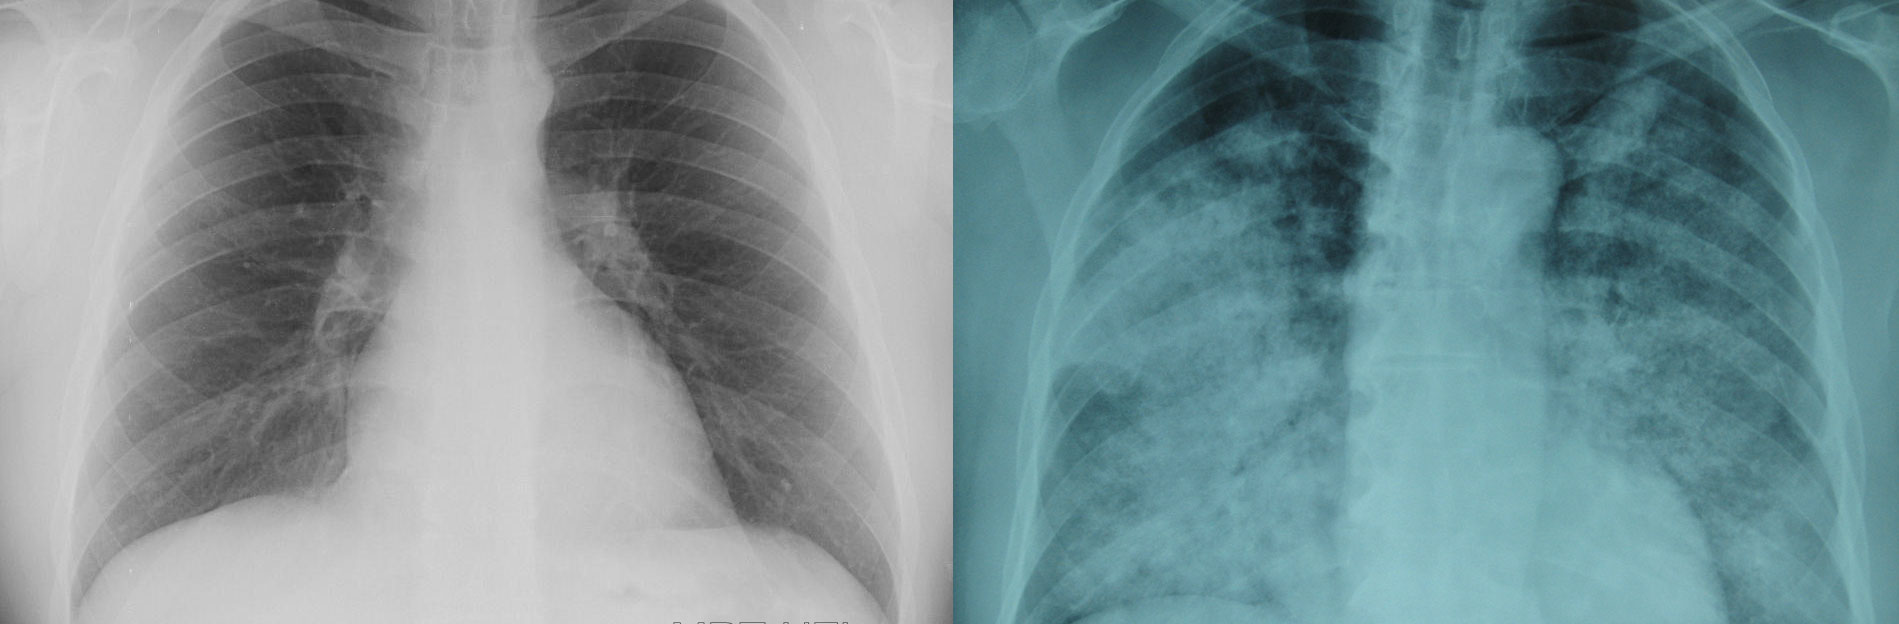 Сравнение снимков рентгена здоровых легких и зараженных пневмонией